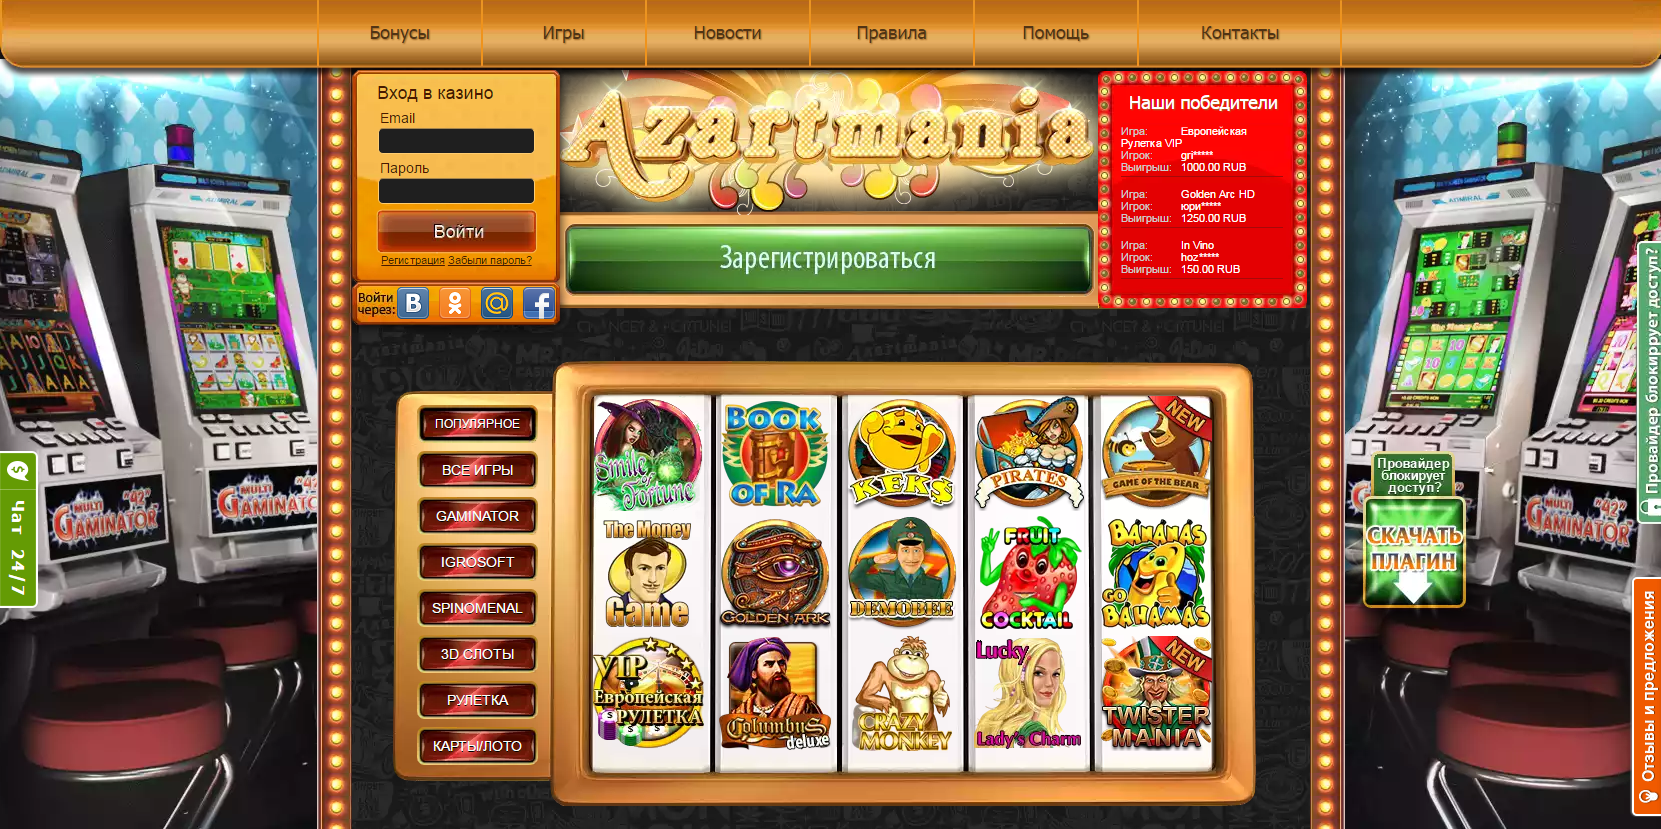 Онлайн казино агро играть бесплатно без регистрации хит игровые автоматы